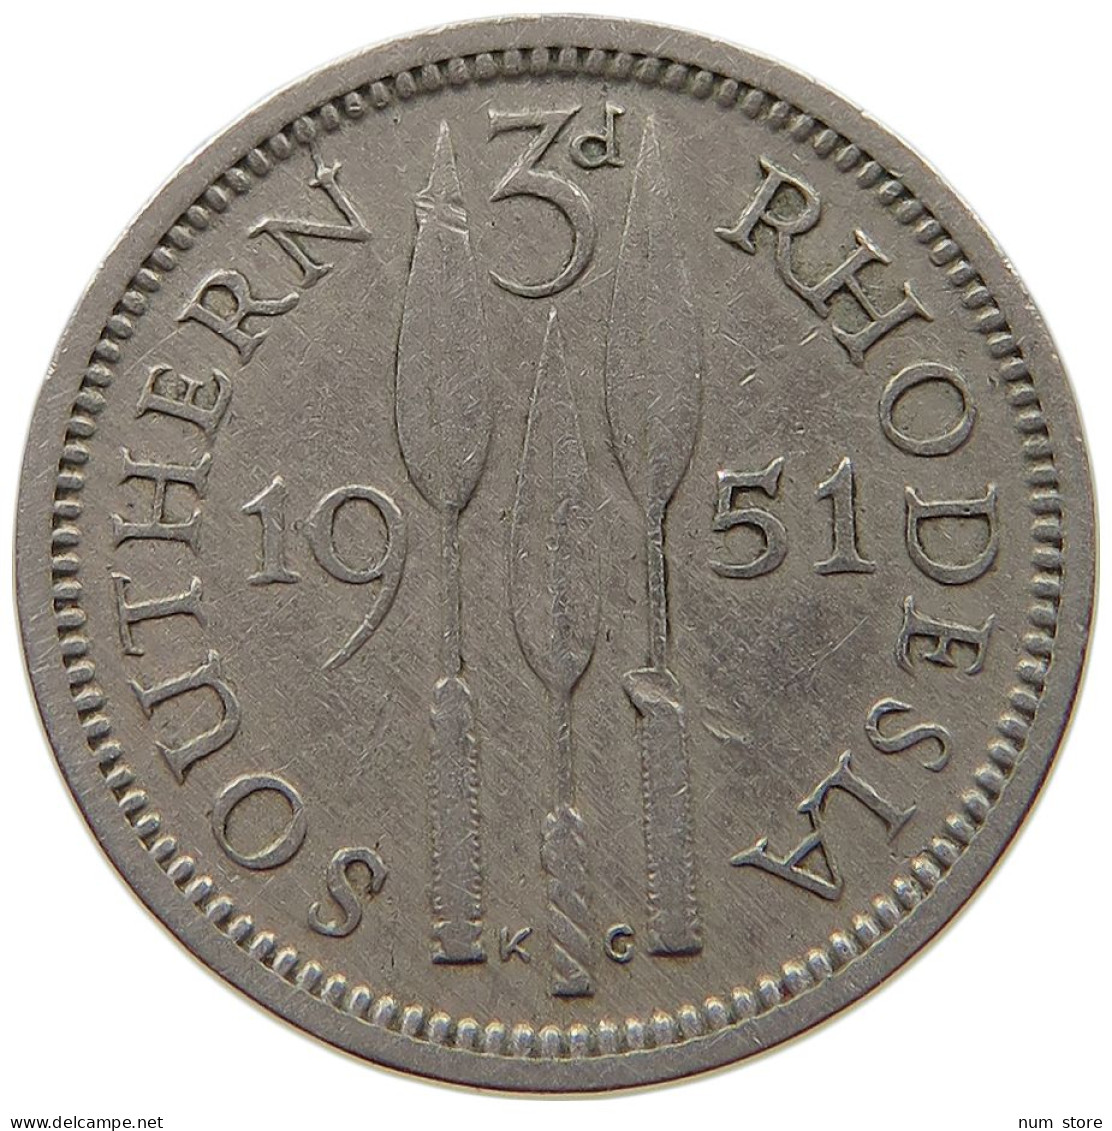 SOUTHERN RHODESIA 3 PENCE 1951 George VI. (1936-1952) #c011 0751 - Rhodesien